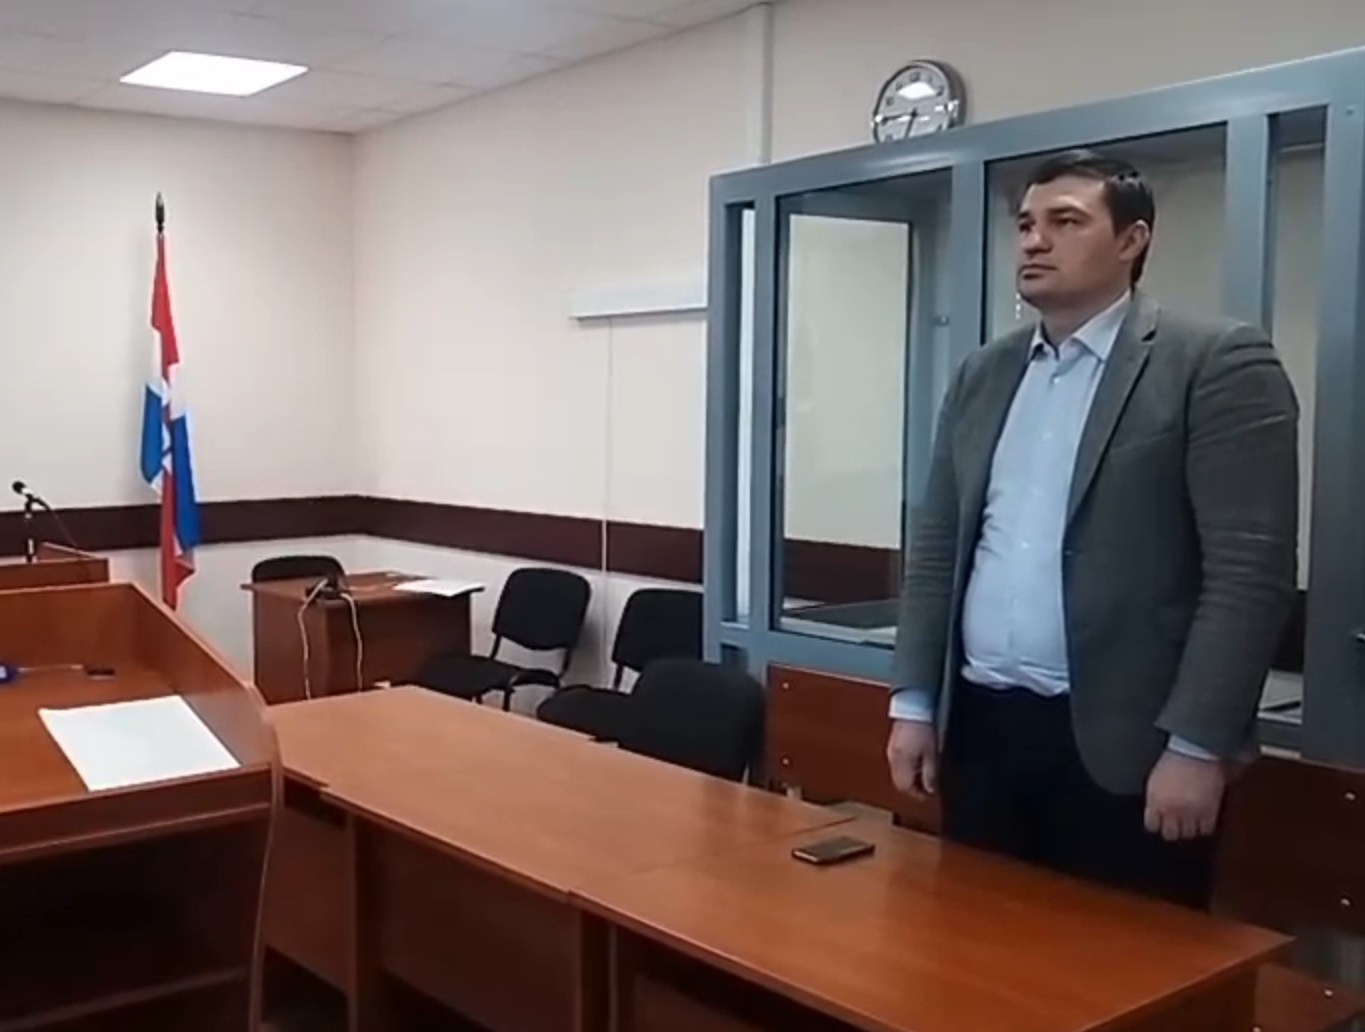 Бывший депутат Александр Телепнев, избивший DJ Smash, будет отбывать наказание в колонии под Оханском 